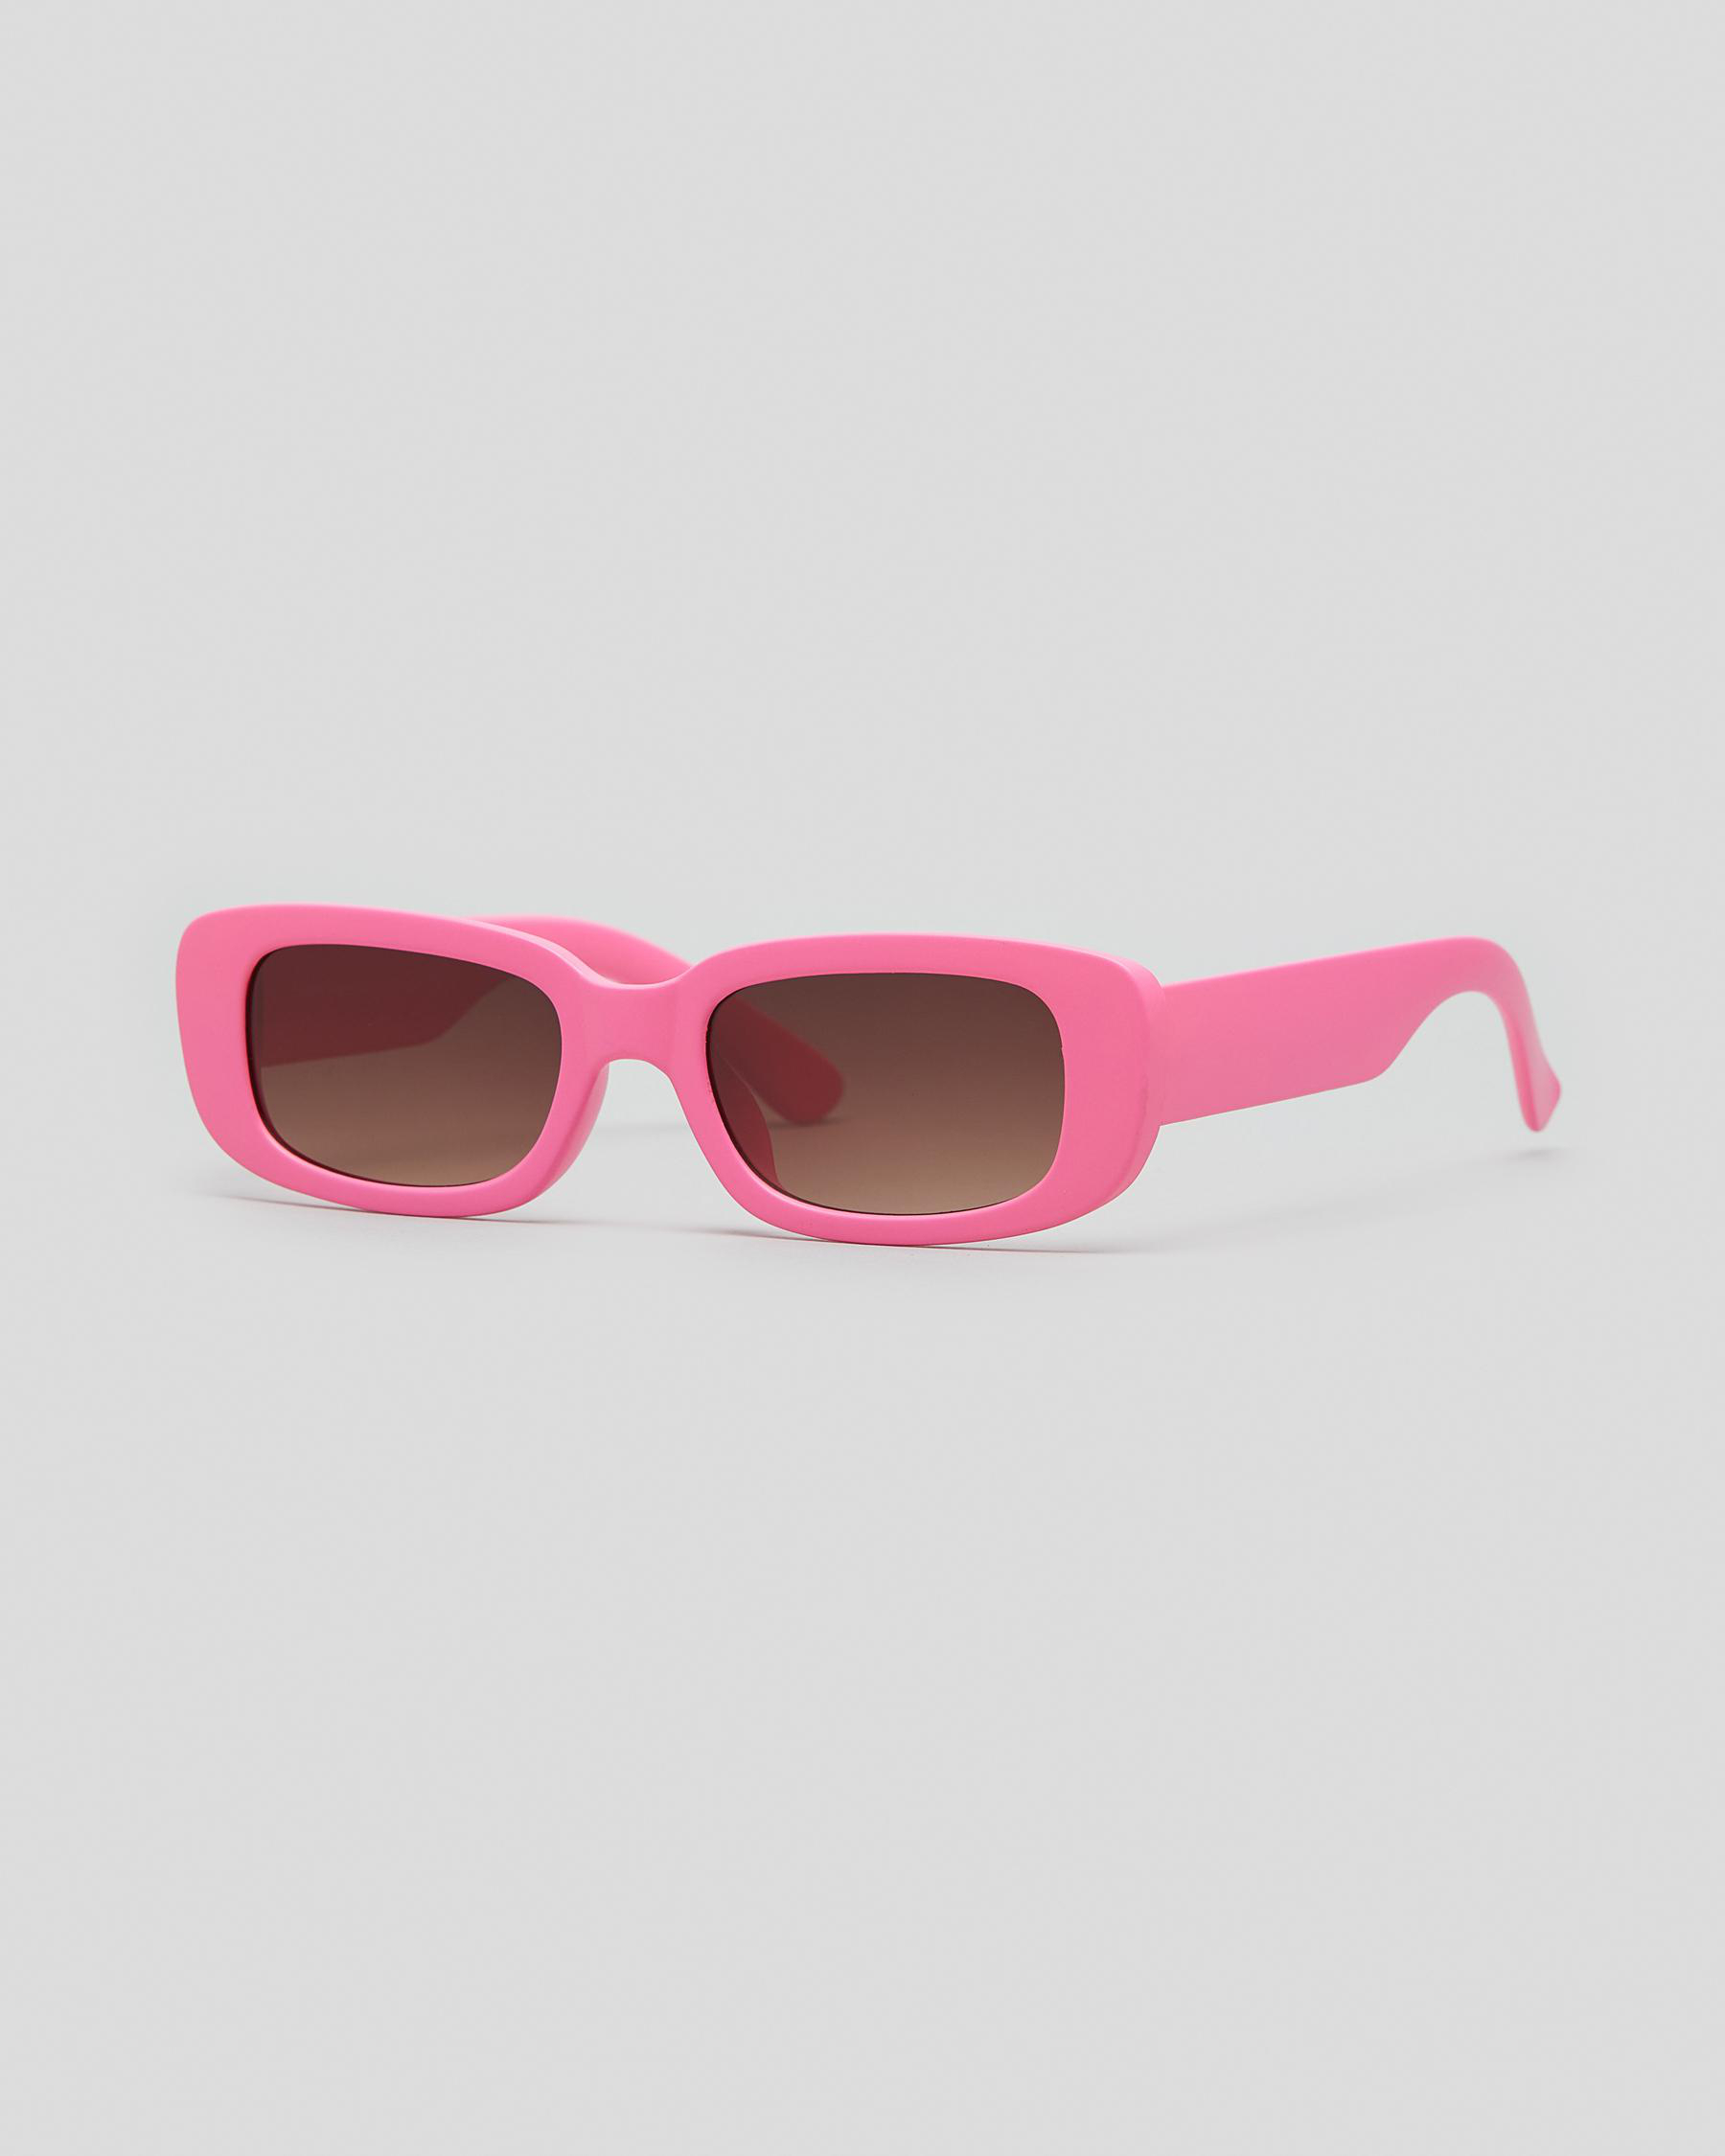 Indie Eyewear Harlow Sunglasses In Bubblegum Pink/gd Brown - Fast ...